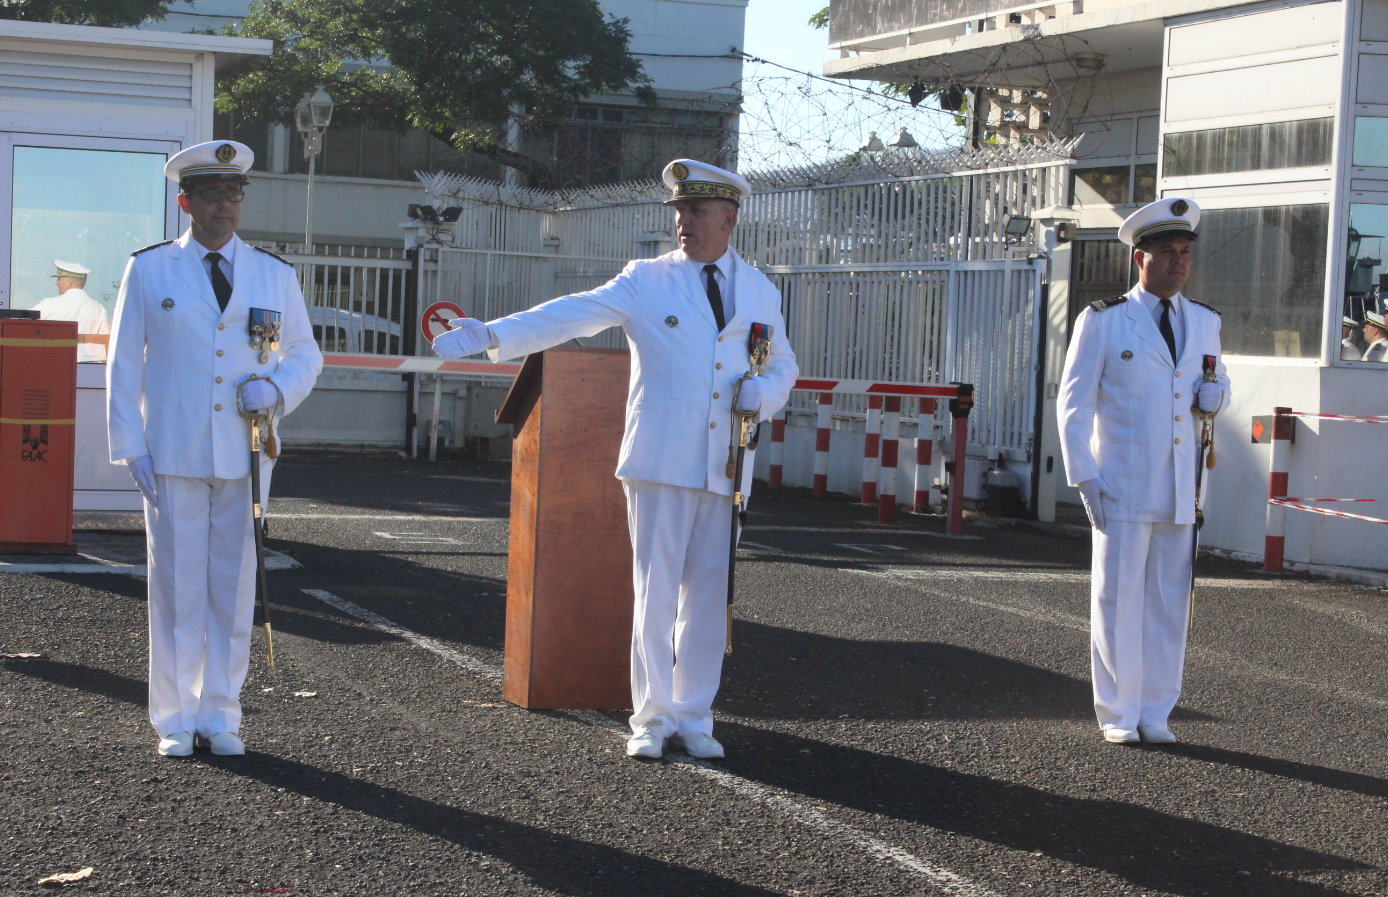 Le contre-amiral Denis Bertrand, commandant supérieur des forces armées en Polynésie française, reconnaît le capitaine de frégate Christophe Robert, comme nouveau commandant de la base navale de Papeete en remplacement du capitaine de frégate Joffrey Guerry.